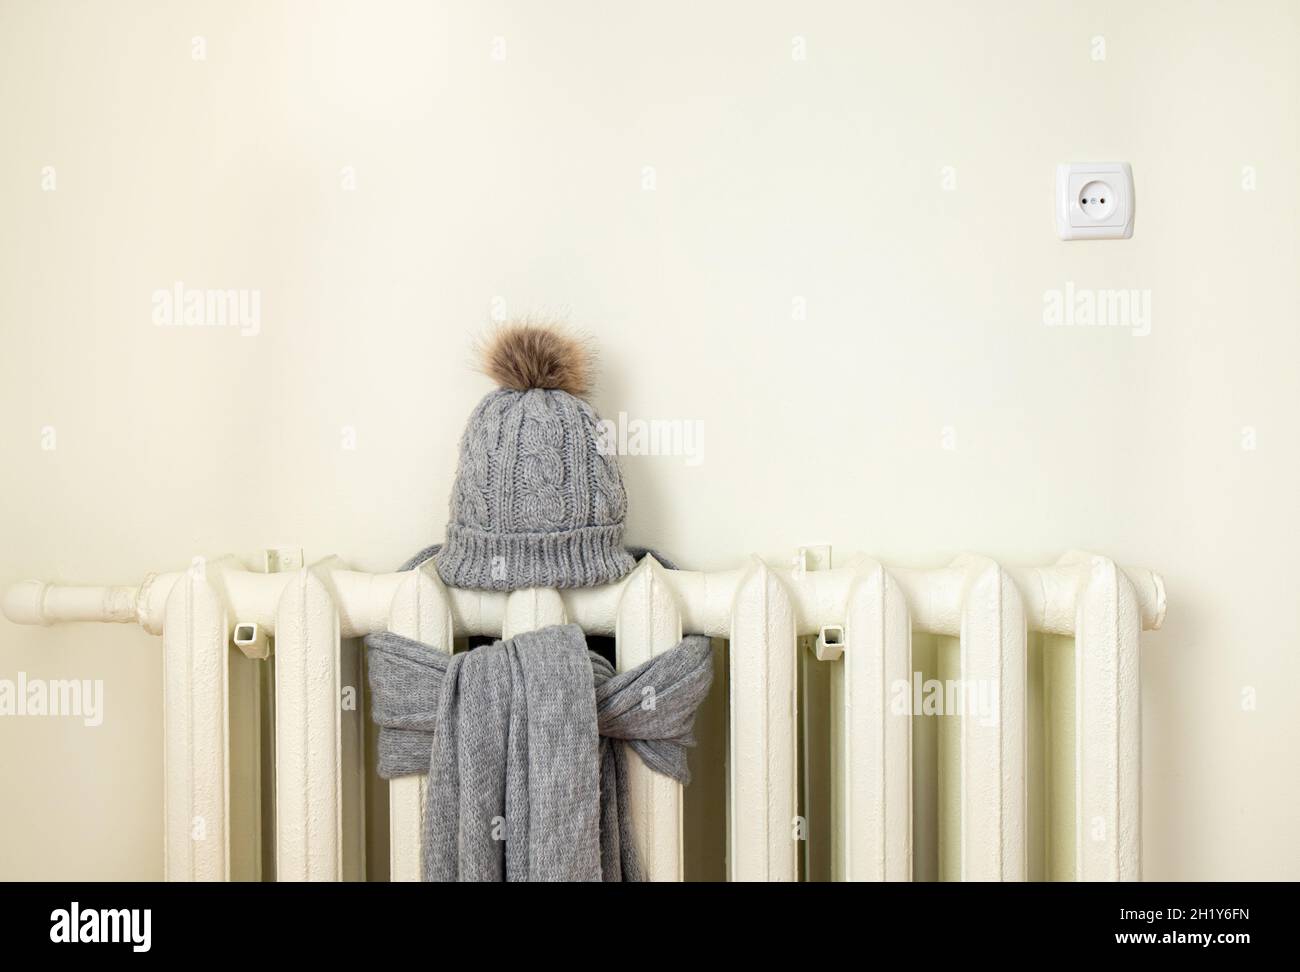 Radiateur de chauffage vintage avec bonnet d'hiver tricoté en laine et écharpe.La facture d'électricité et de gaz monte, concept européen de crise énergétique. Banque D'Images